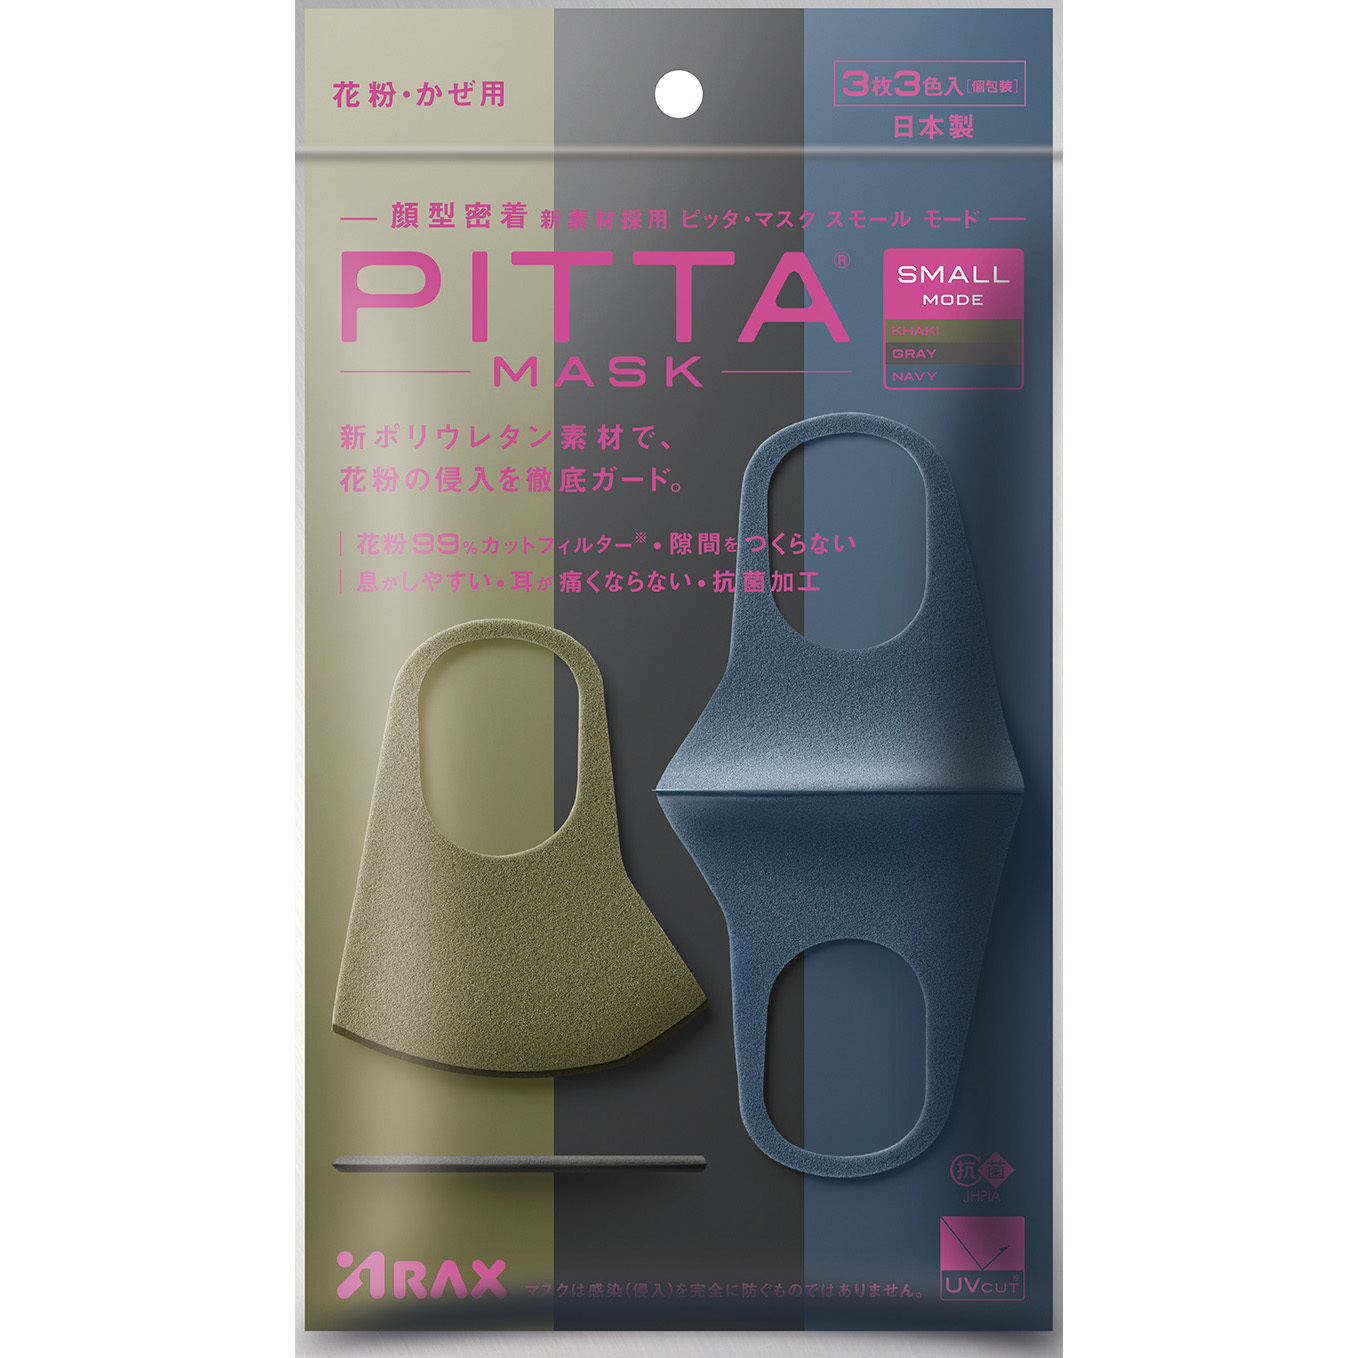 SMALL MODE PITTA MASK(ピッタマスク) スモールサイズ 1パック(3色×1枚) アラクス(ARAX) 【通販サイトMonotaRO】